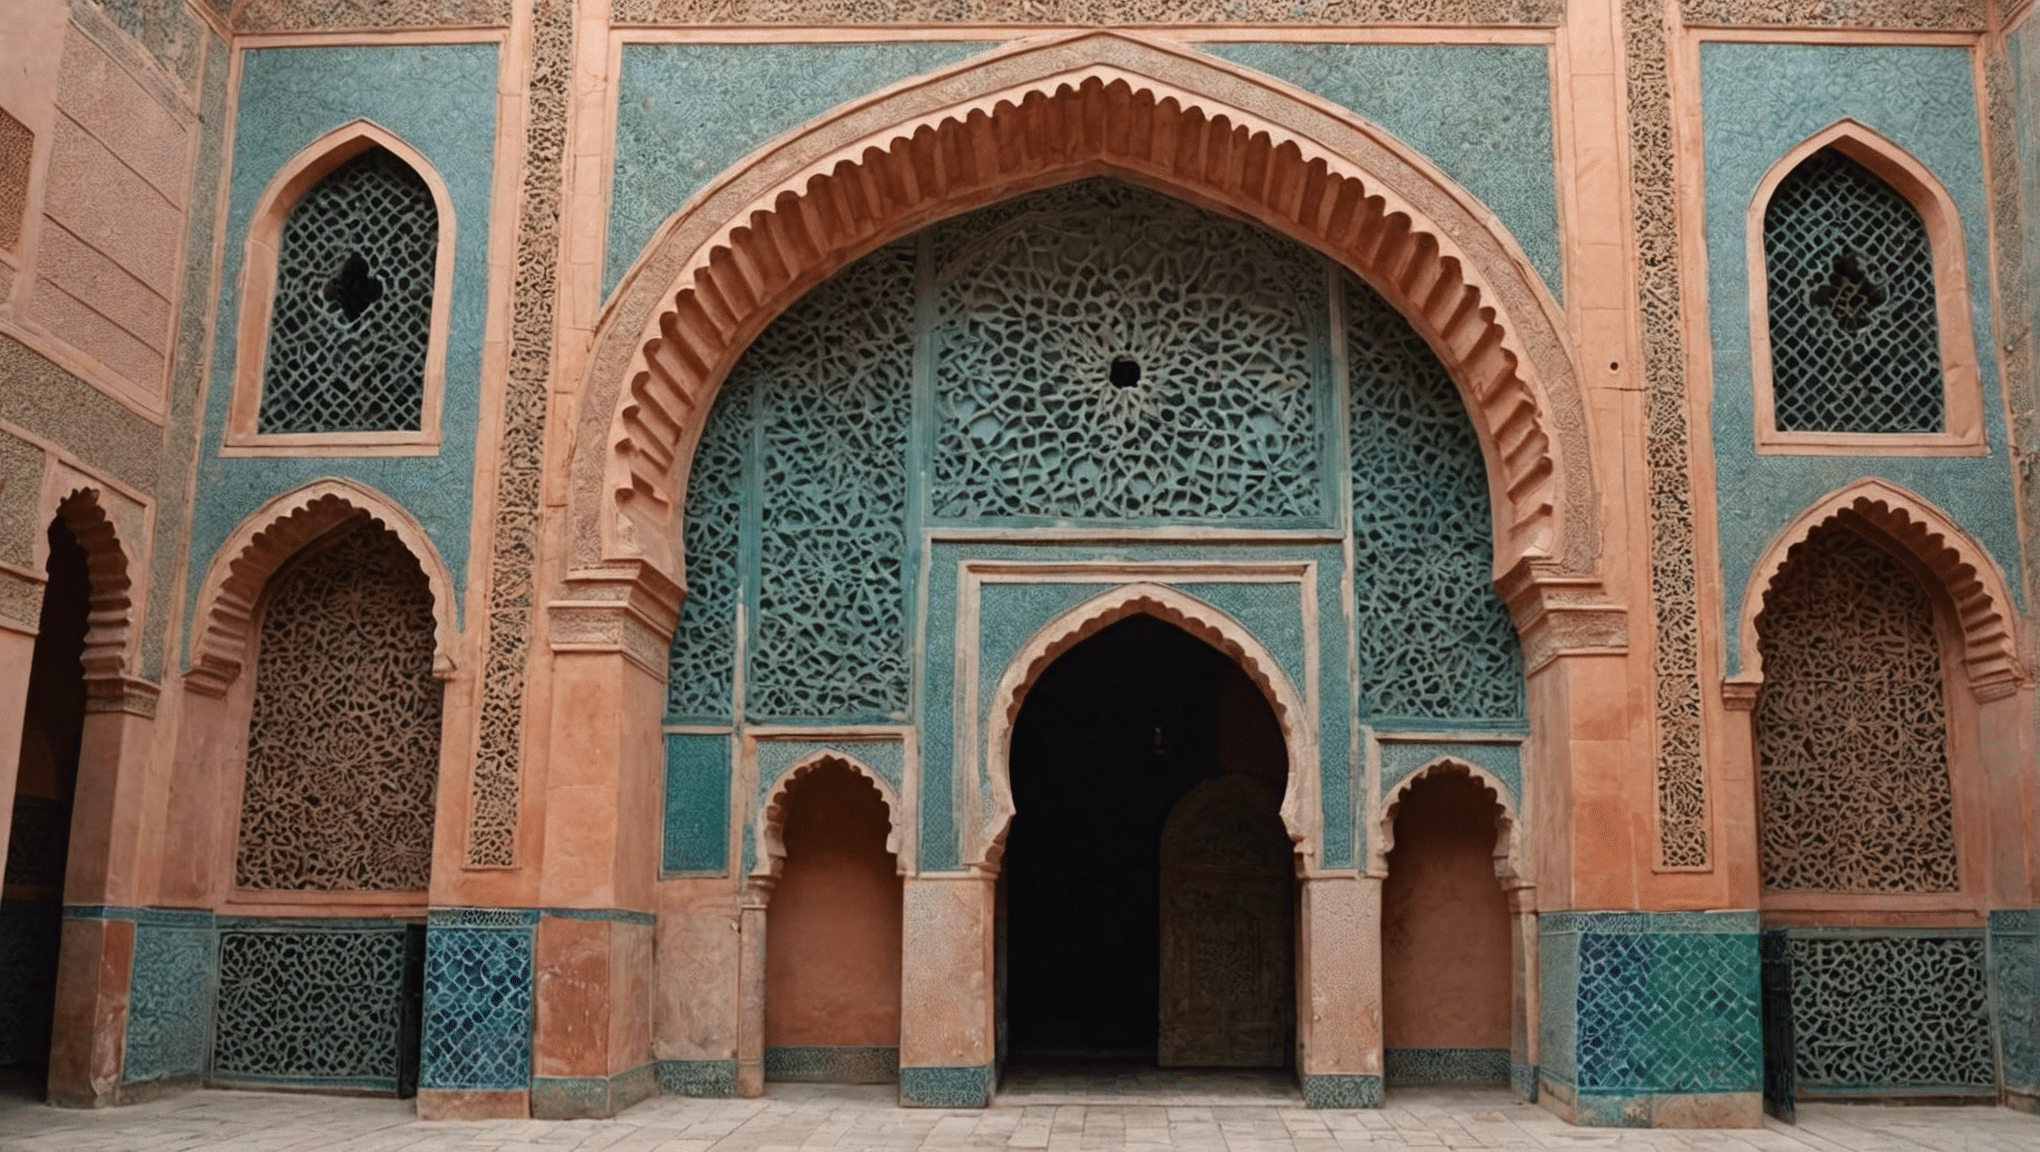 descubre el precio de la entrada a las tumbas saadíes y aprovecha al máximo tu visita a este sitio histórico en Marrakech.